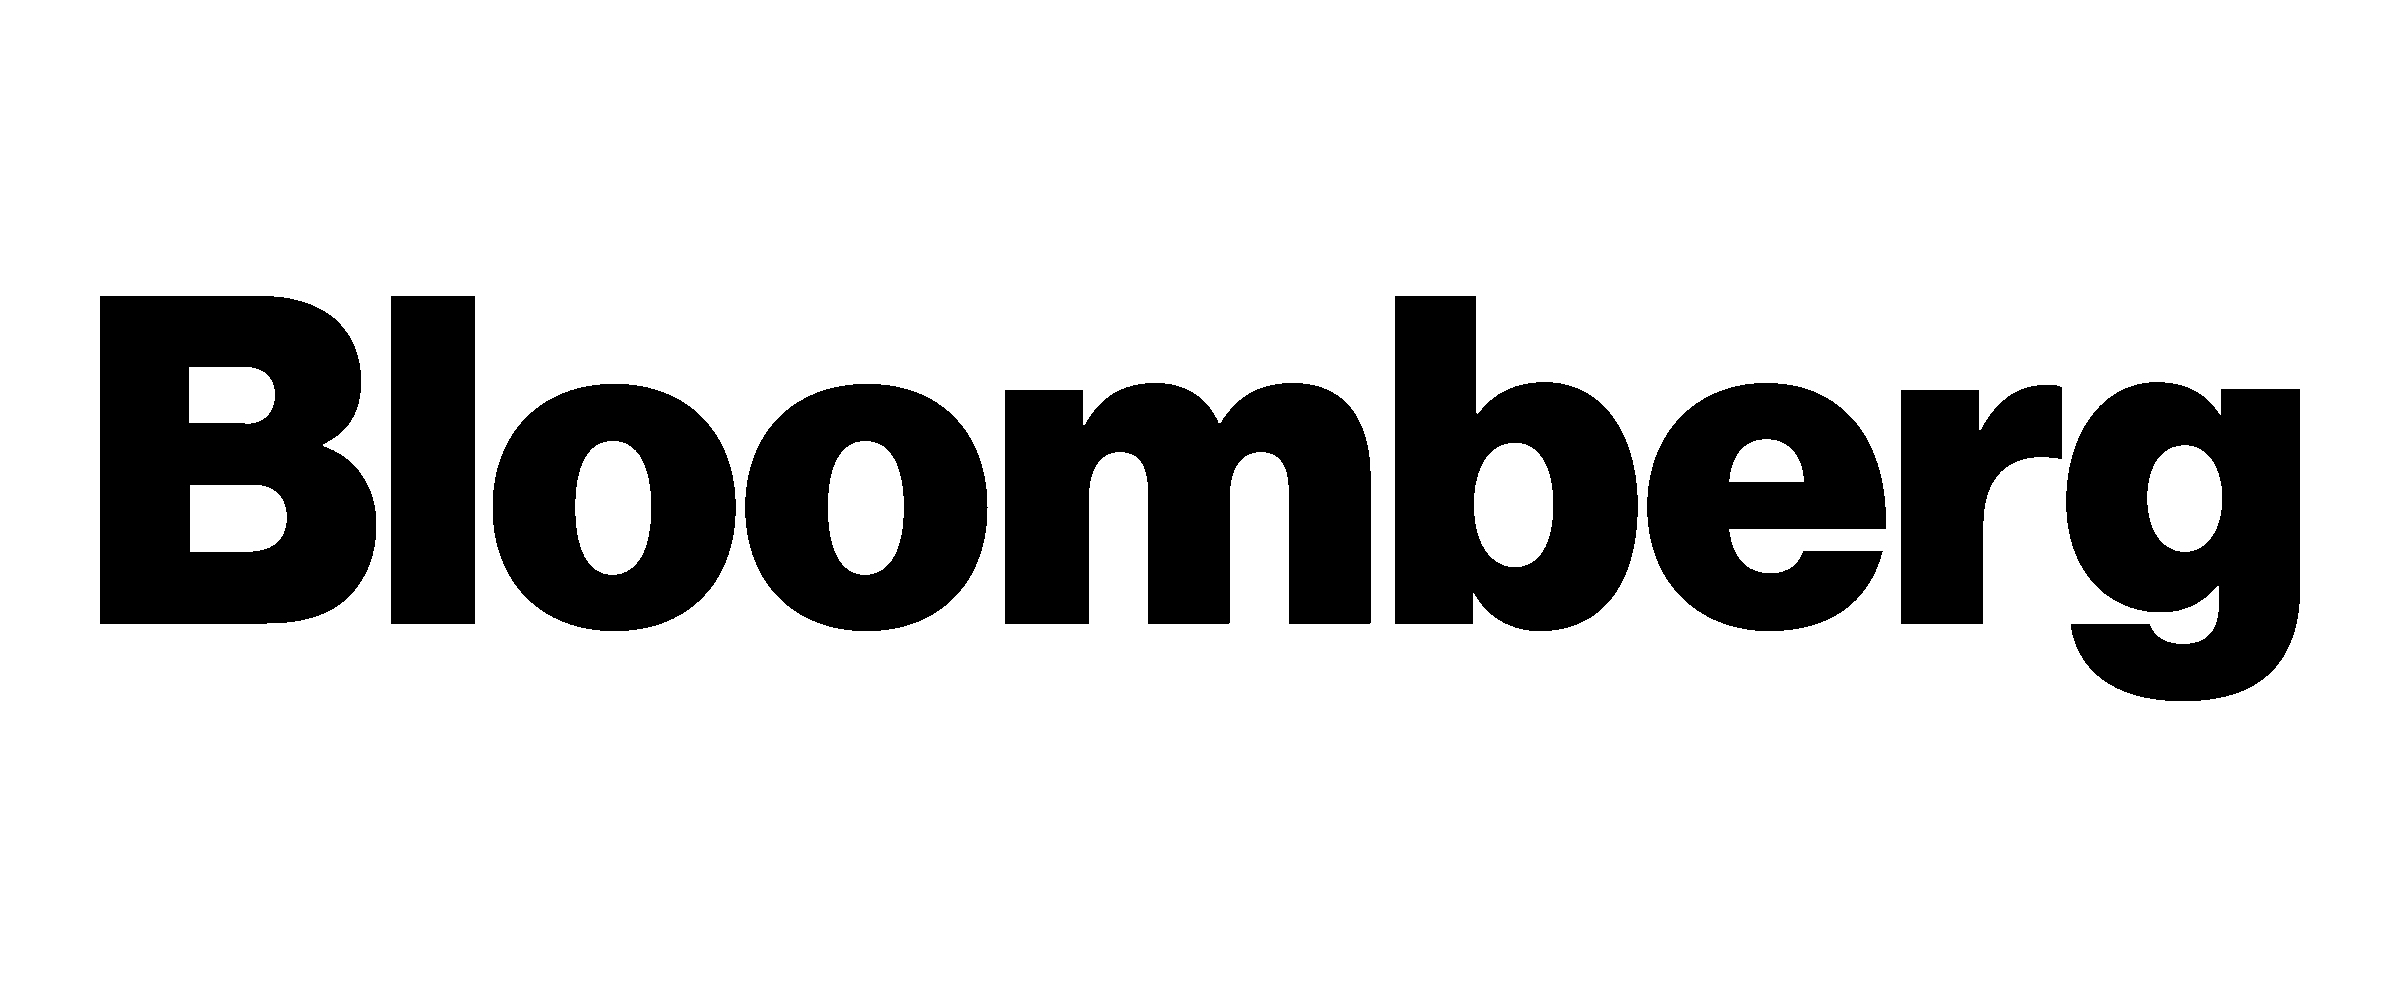 Bloomberg logo bf131b69c0